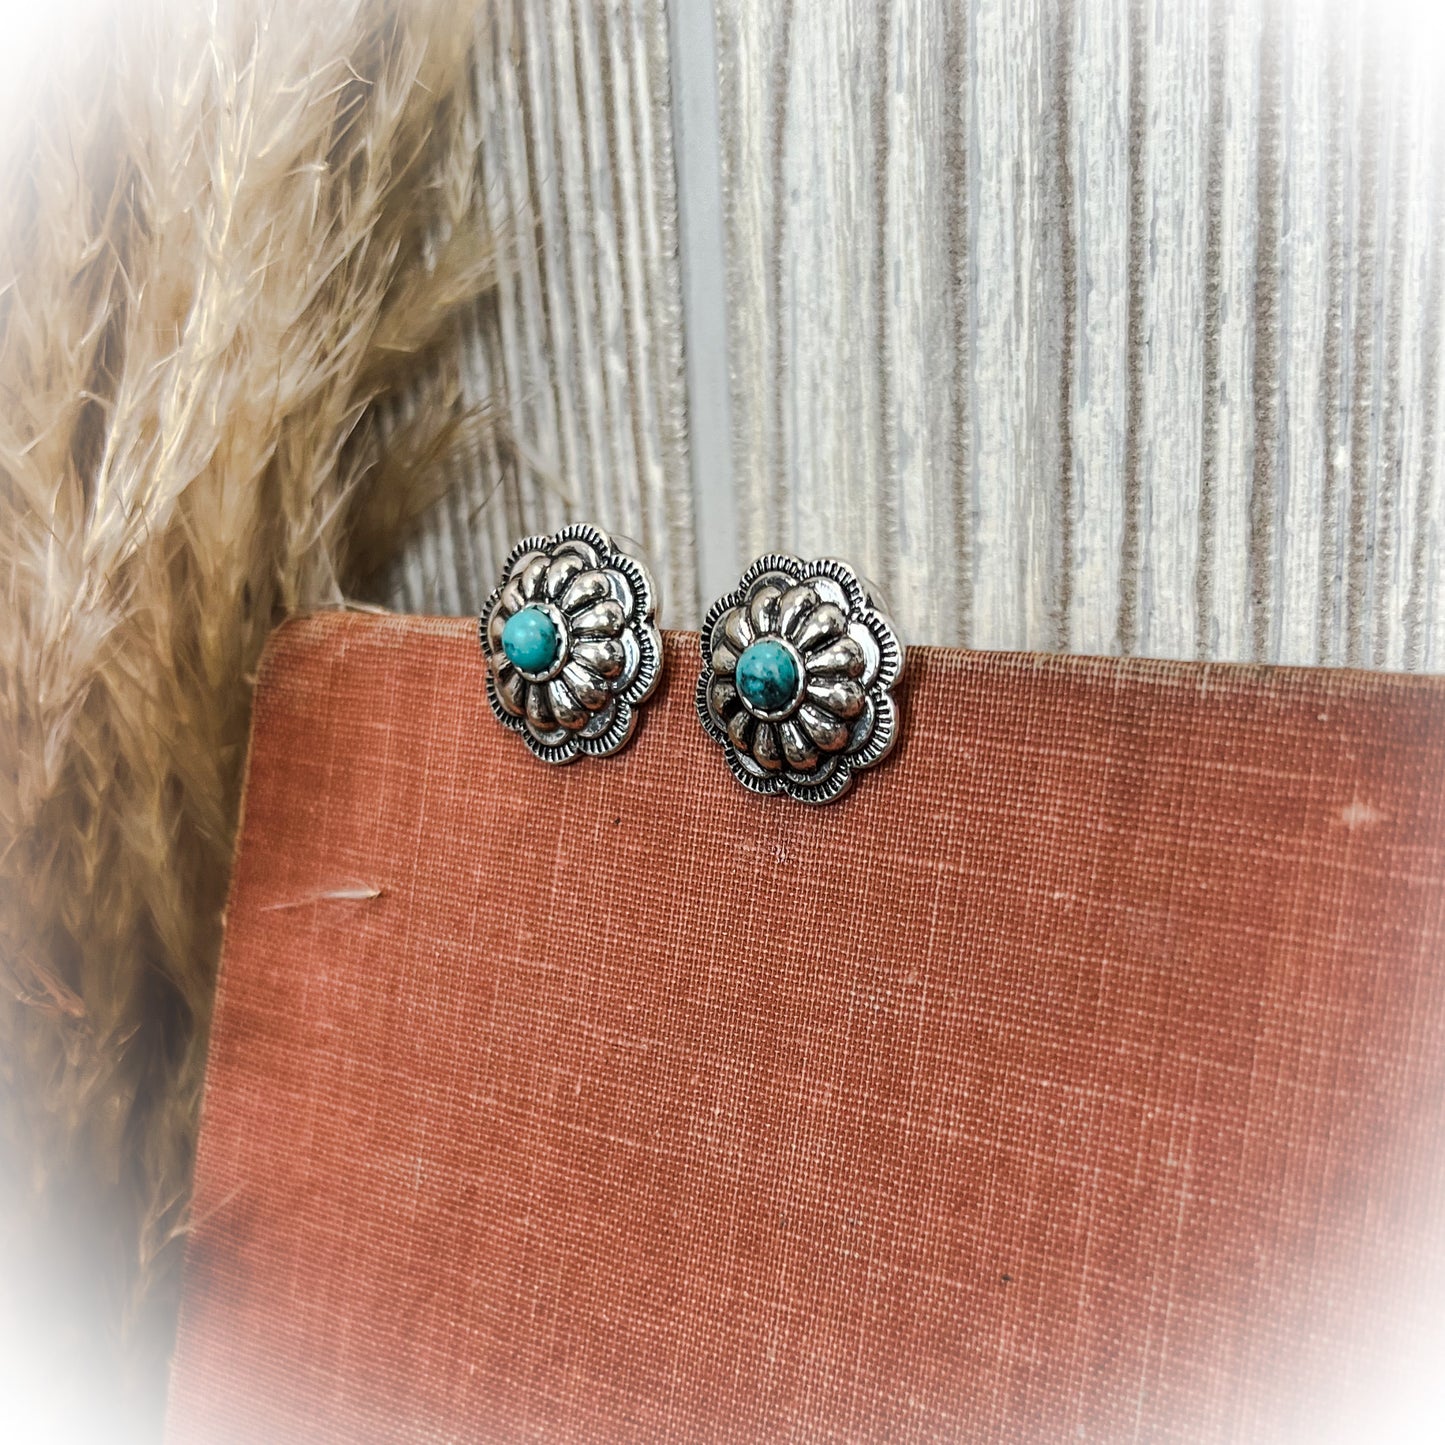 z-Flower Concho Stud Earrings - Turquoise